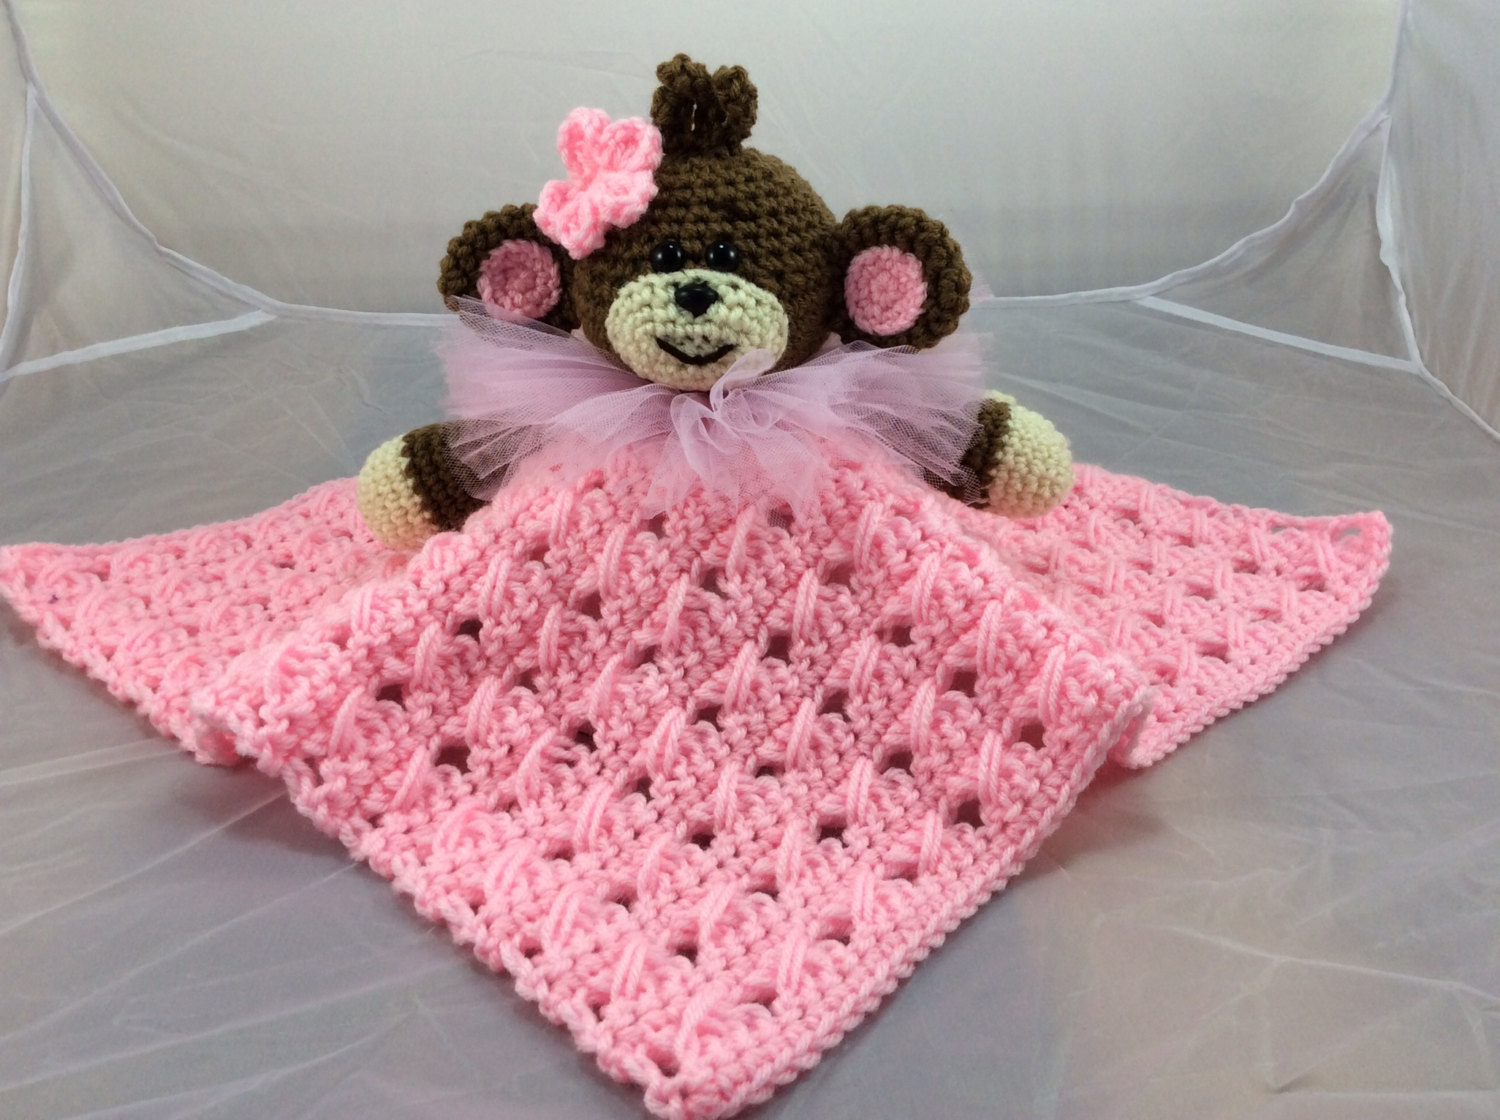 Monkey Blanket Crochet Pattern Monkey Lovey Or Security Blanket Pdf Crochet Pattern Etsy